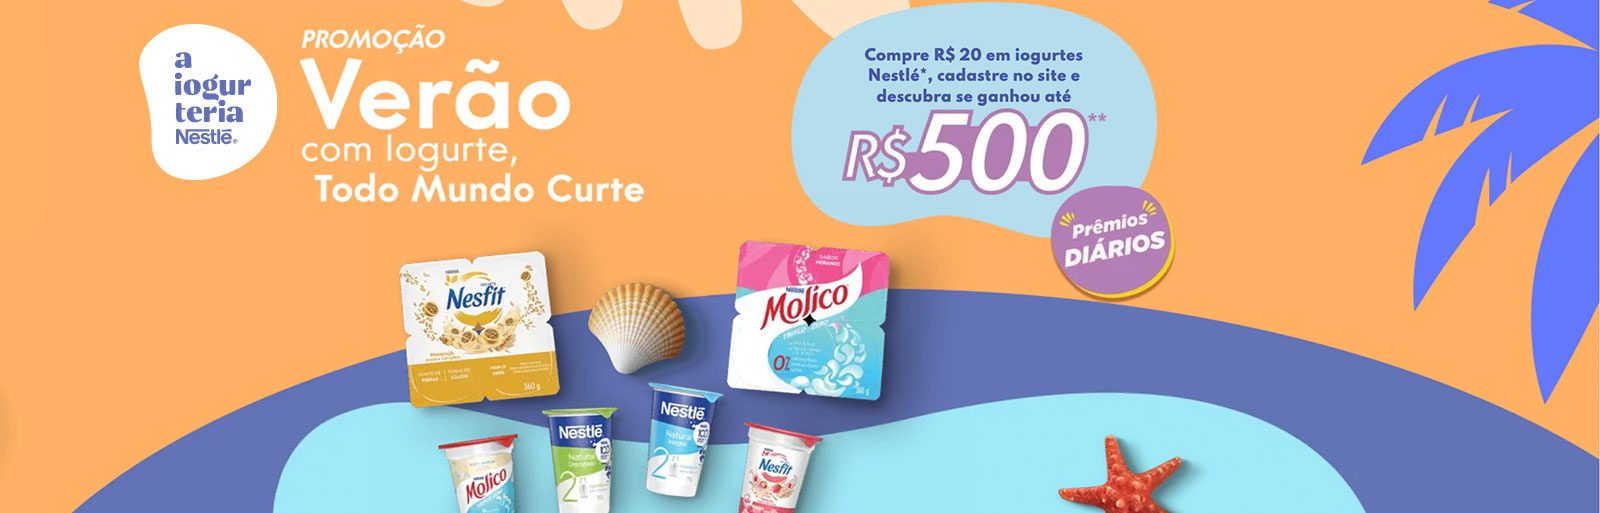 Promoção Nestlé 2022 - Verão com Iogurt Todo Mundo Curte